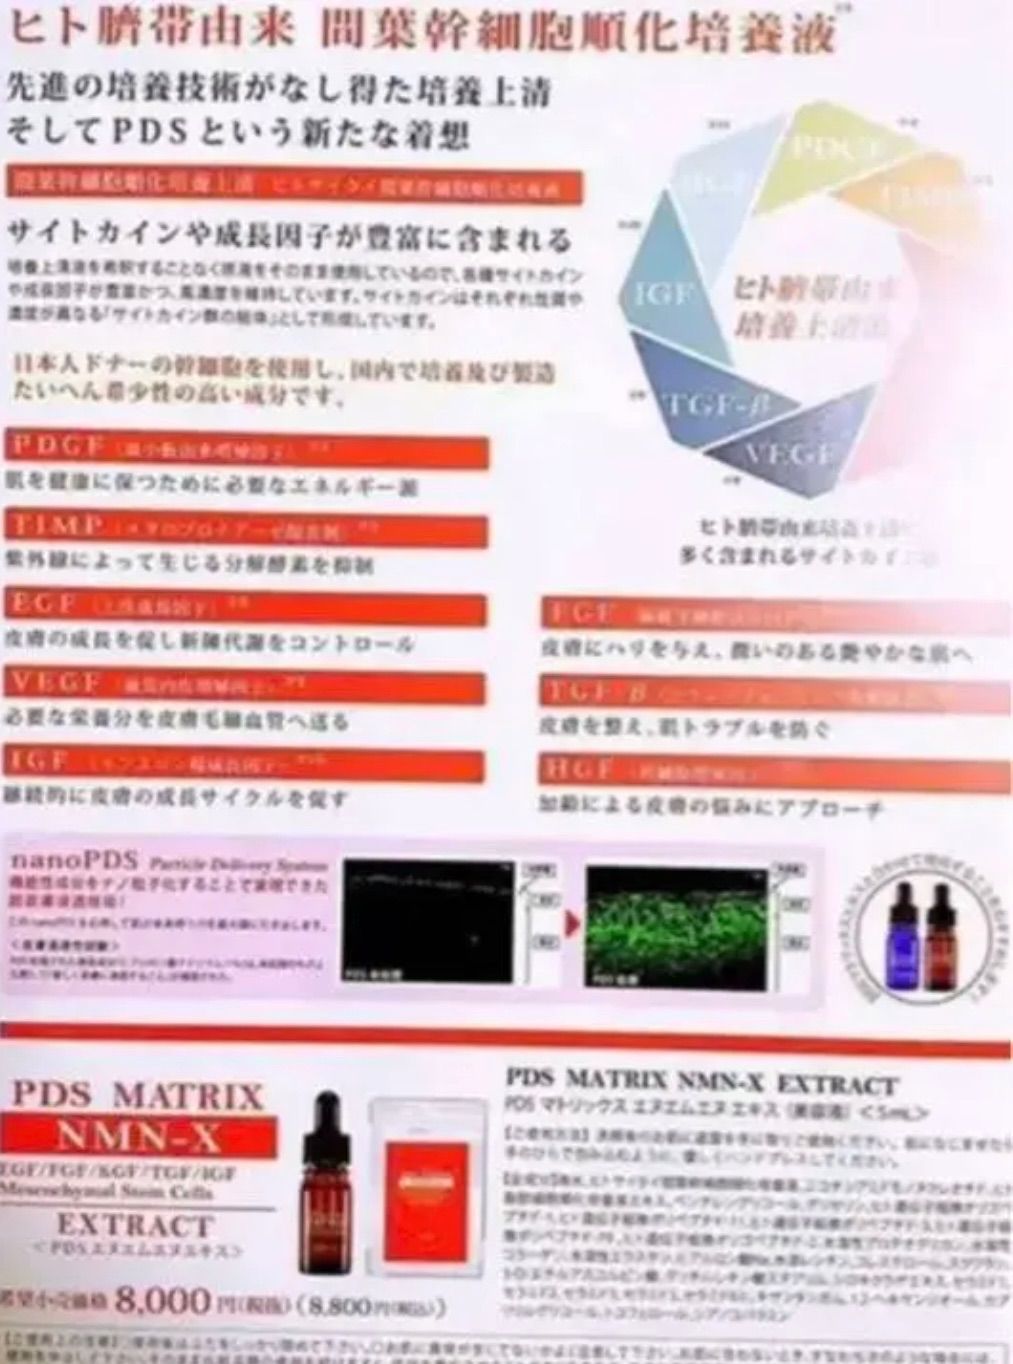 PDSマトリックス　NMN-X 5ml 臍帯幹細胞  10本定価:88,000円